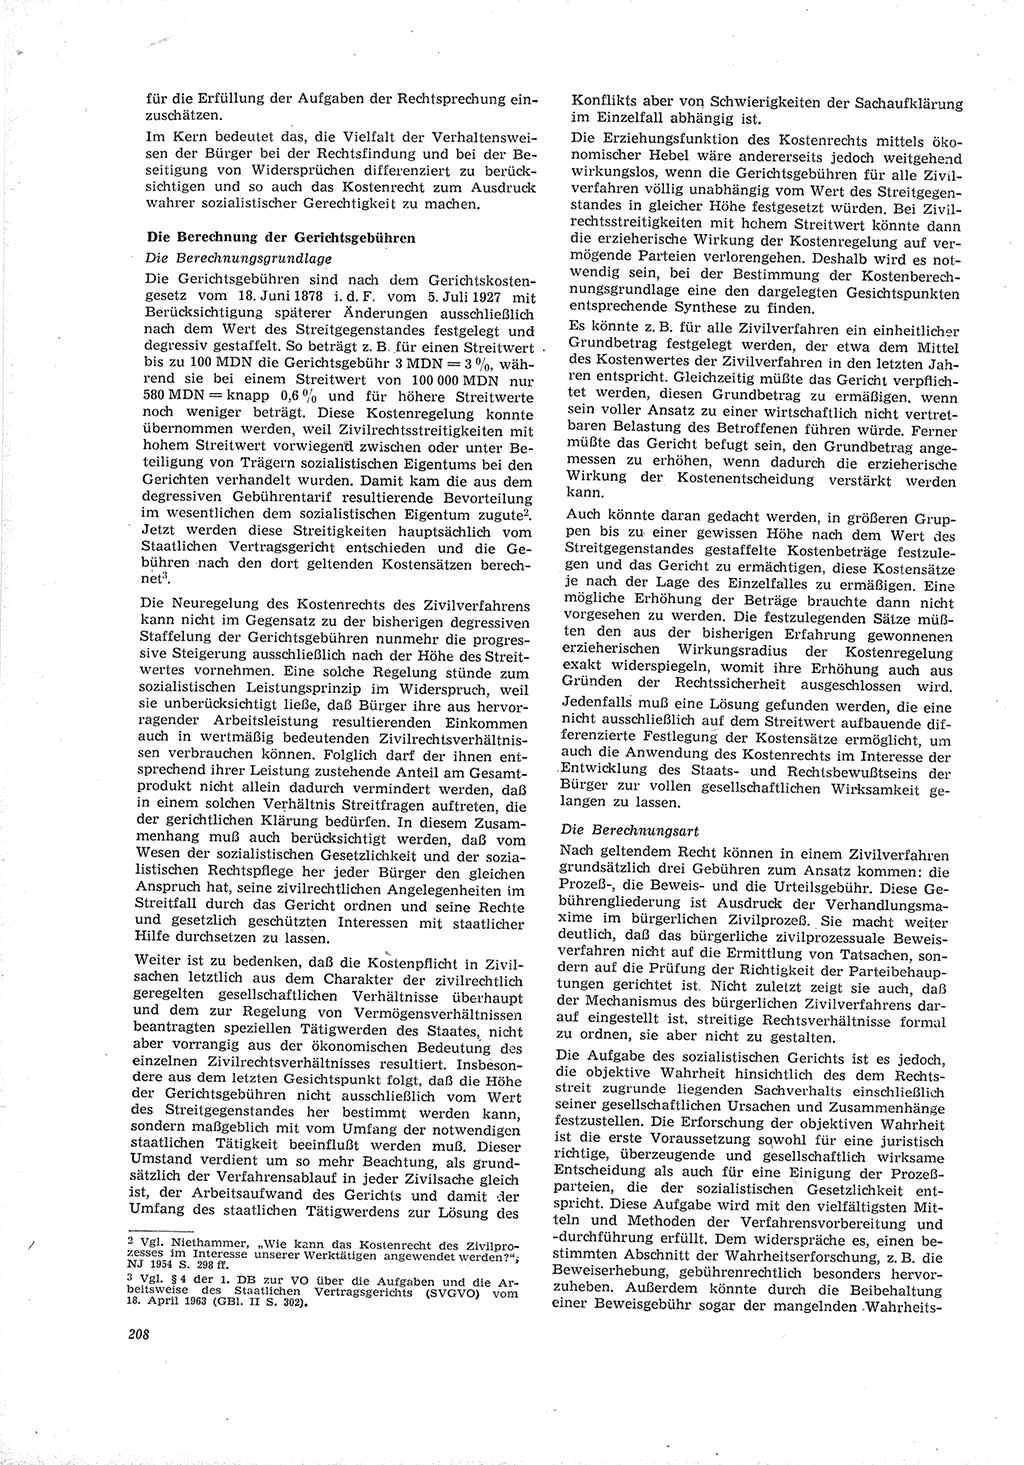 Neue Justiz (NJ), Zeitschrift für Recht und Rechtswissenschaft [Deutsche Demokratische Republik (DDR)], 19. Jahrgang 1965, Seite 208 (NJ DDR 1965, S. 208)